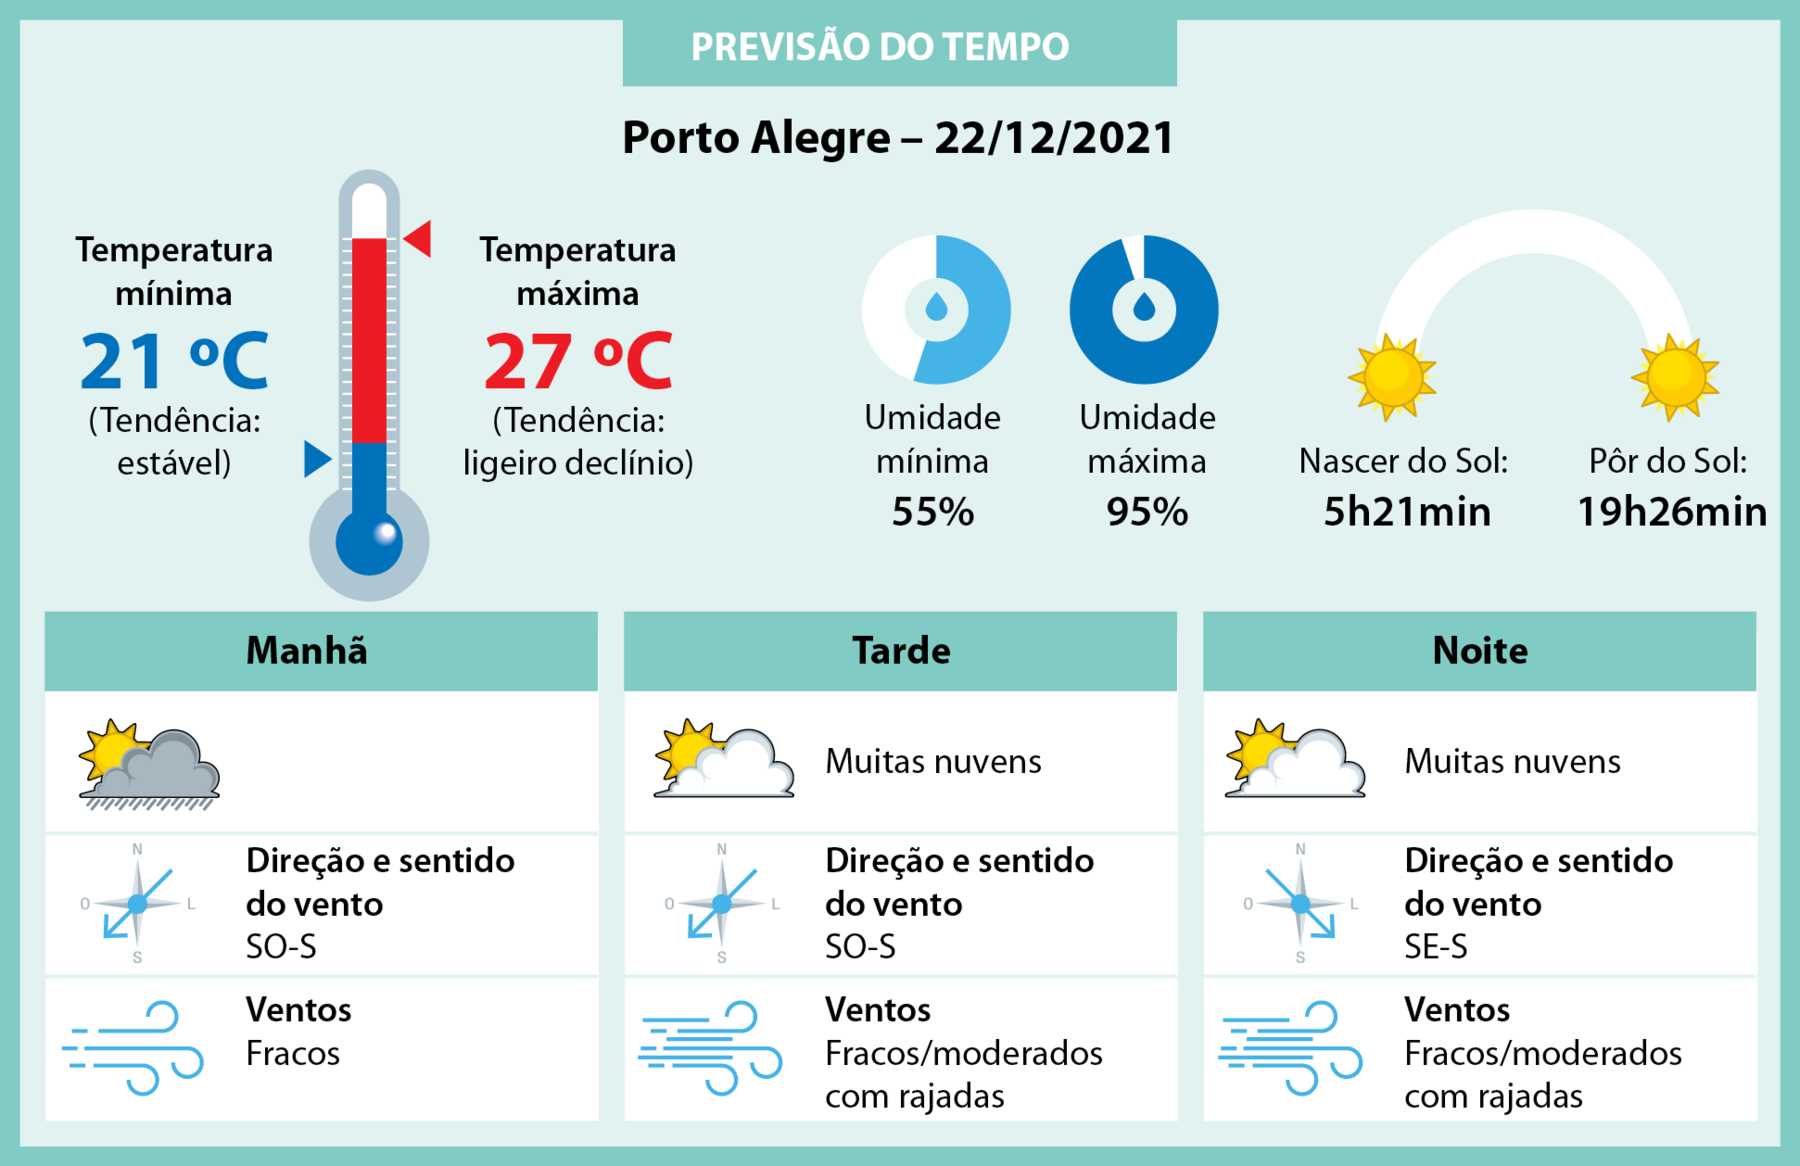 Quadro. Quadro ilustrado com informações de previsão do tempo em Porto Alegre, em 22 de dezembro de 2021. 
temperatura mínima: 21 graus Celsius (tendência estável); temperatura máxima: 27 graus Celsius (tendência: ligeiro declínio); umidade mínima: 55 por cento; umidade máxima: 95 por cento; nascer do sol: 5 horas e 21 minutos. Pôr do Sol: 19 horas e 26 minutos. Manhã: direção e sentido do vento: Sudoeste-Sul, ventos fracos. Tarde: muitas nuvens; direção e sentido do vento: Sudoeste-Sul; ventos: fracos ou moderados com rajadas. Noite: muitas nuvens; direção e sentido do vento: Sudeste-Sul; ventos fracos ou moderados com rajadas. 
Há ilustração de um termômetro, dois gráficos de pizza com os dados relativos à umidade, dois sóis referentes ao nascer e pôr do sol, nuvens com sol representando condições do tempo, rosa dos ventos mostrando a direção dos ventos. Linhas azuis representando ventos.